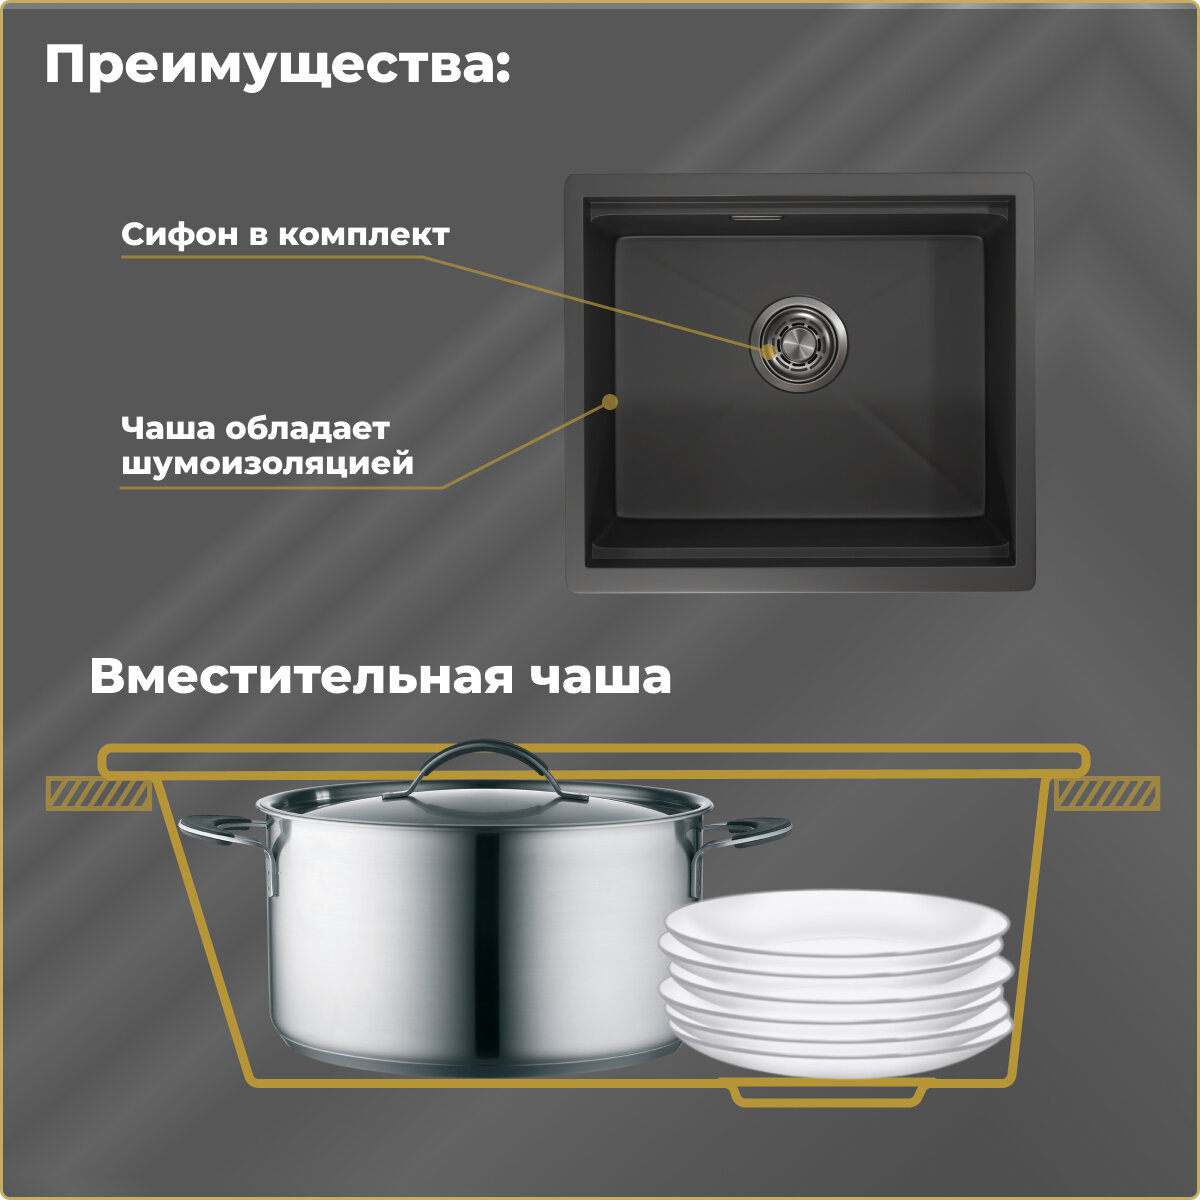 Мойка для кухни GRANULA KS-5045, чёрный матовый, стальная, раковина для кухни